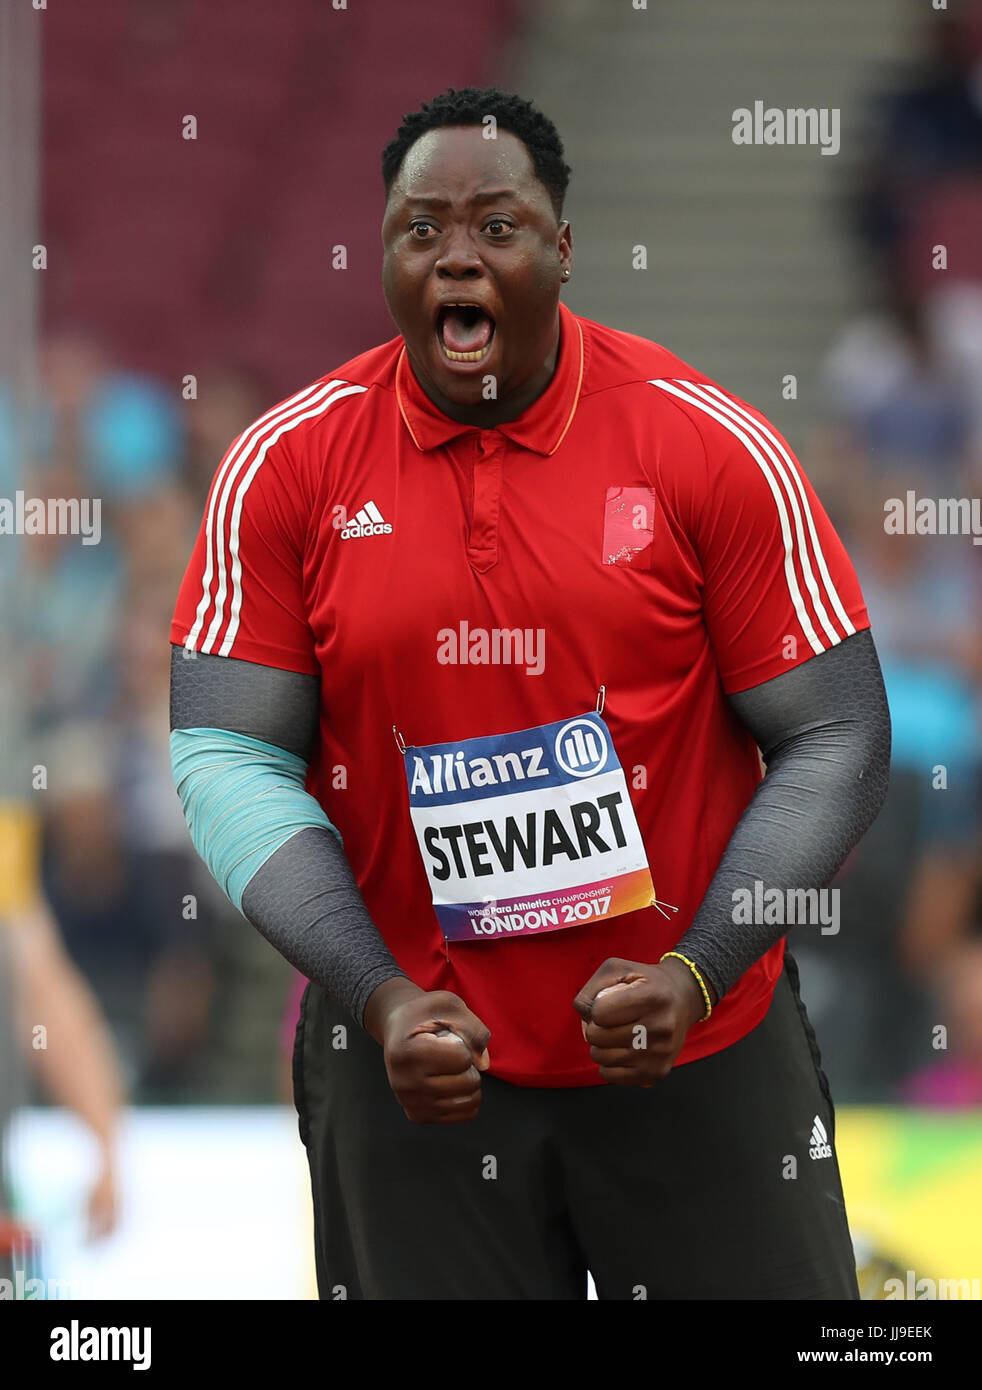 Trinidad und Tobago Akeem Stewart reagiert auf einen guten Wurf, während die Männer Speer werfen F44 letzte Tag fünf der 2017 Para Leichtathletik-Weltmeisterschaften in London Stadion. Stockfoto